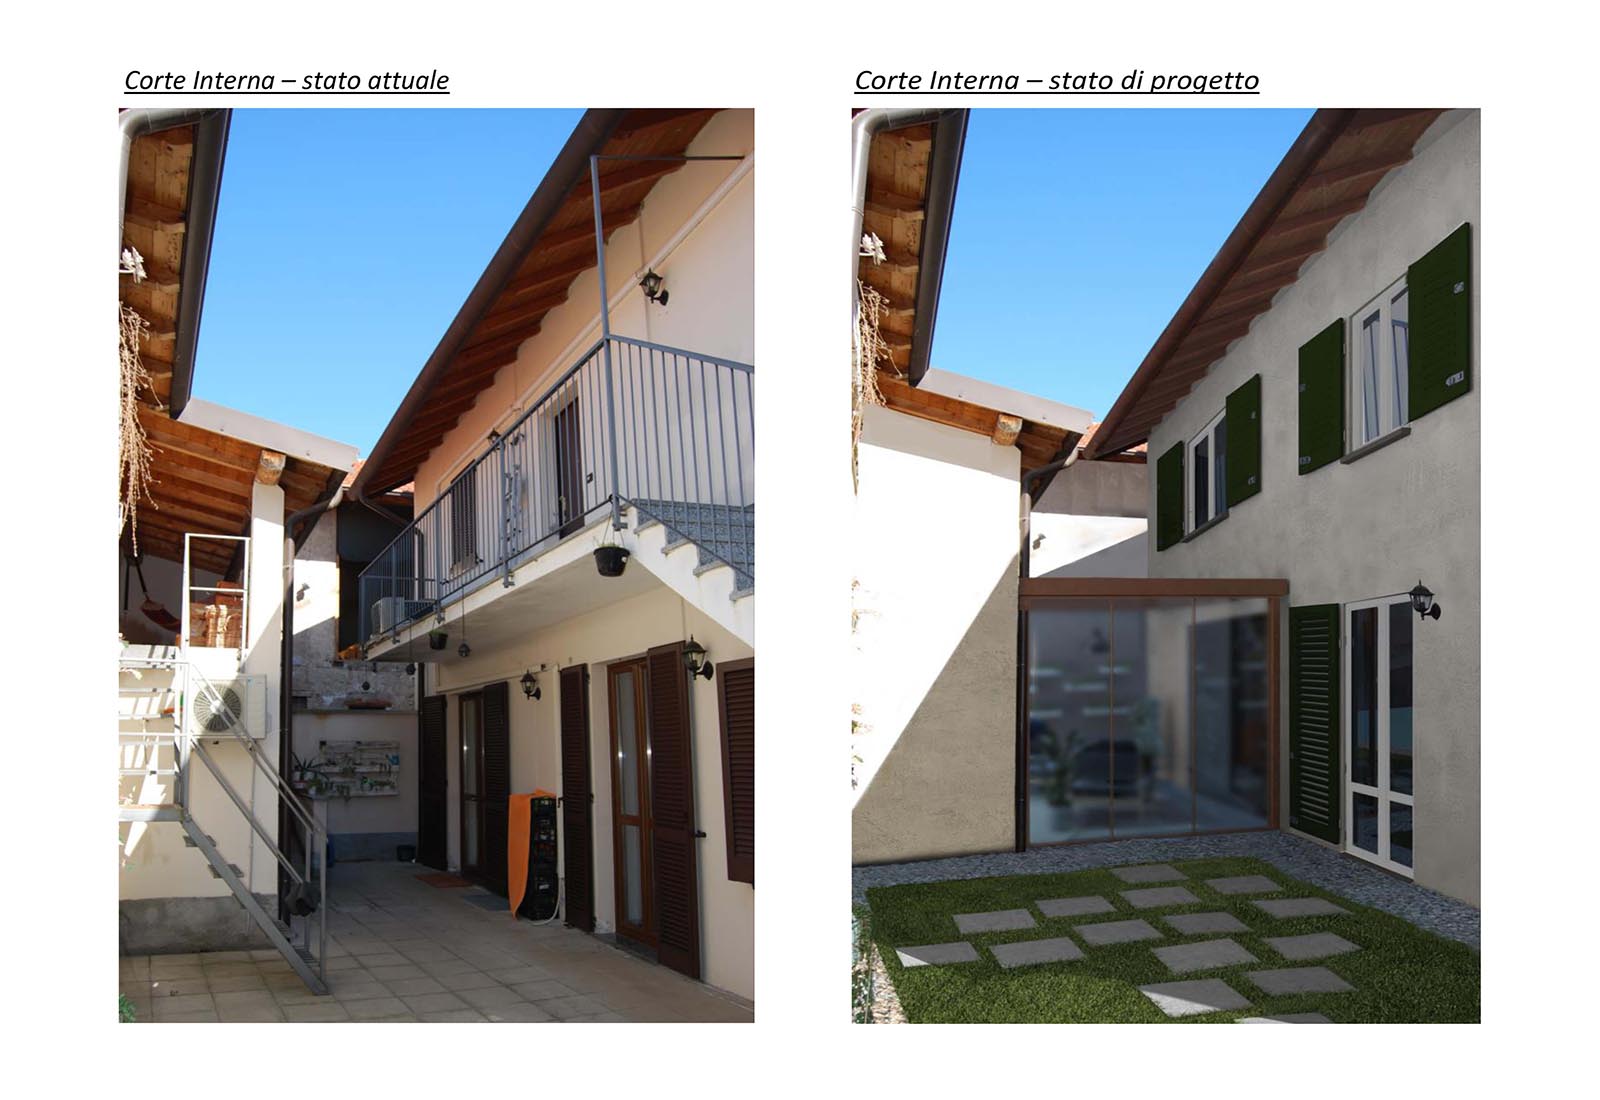 Casa privata in porzione corte a Bernate Ticino - Stato di confronto corte interna